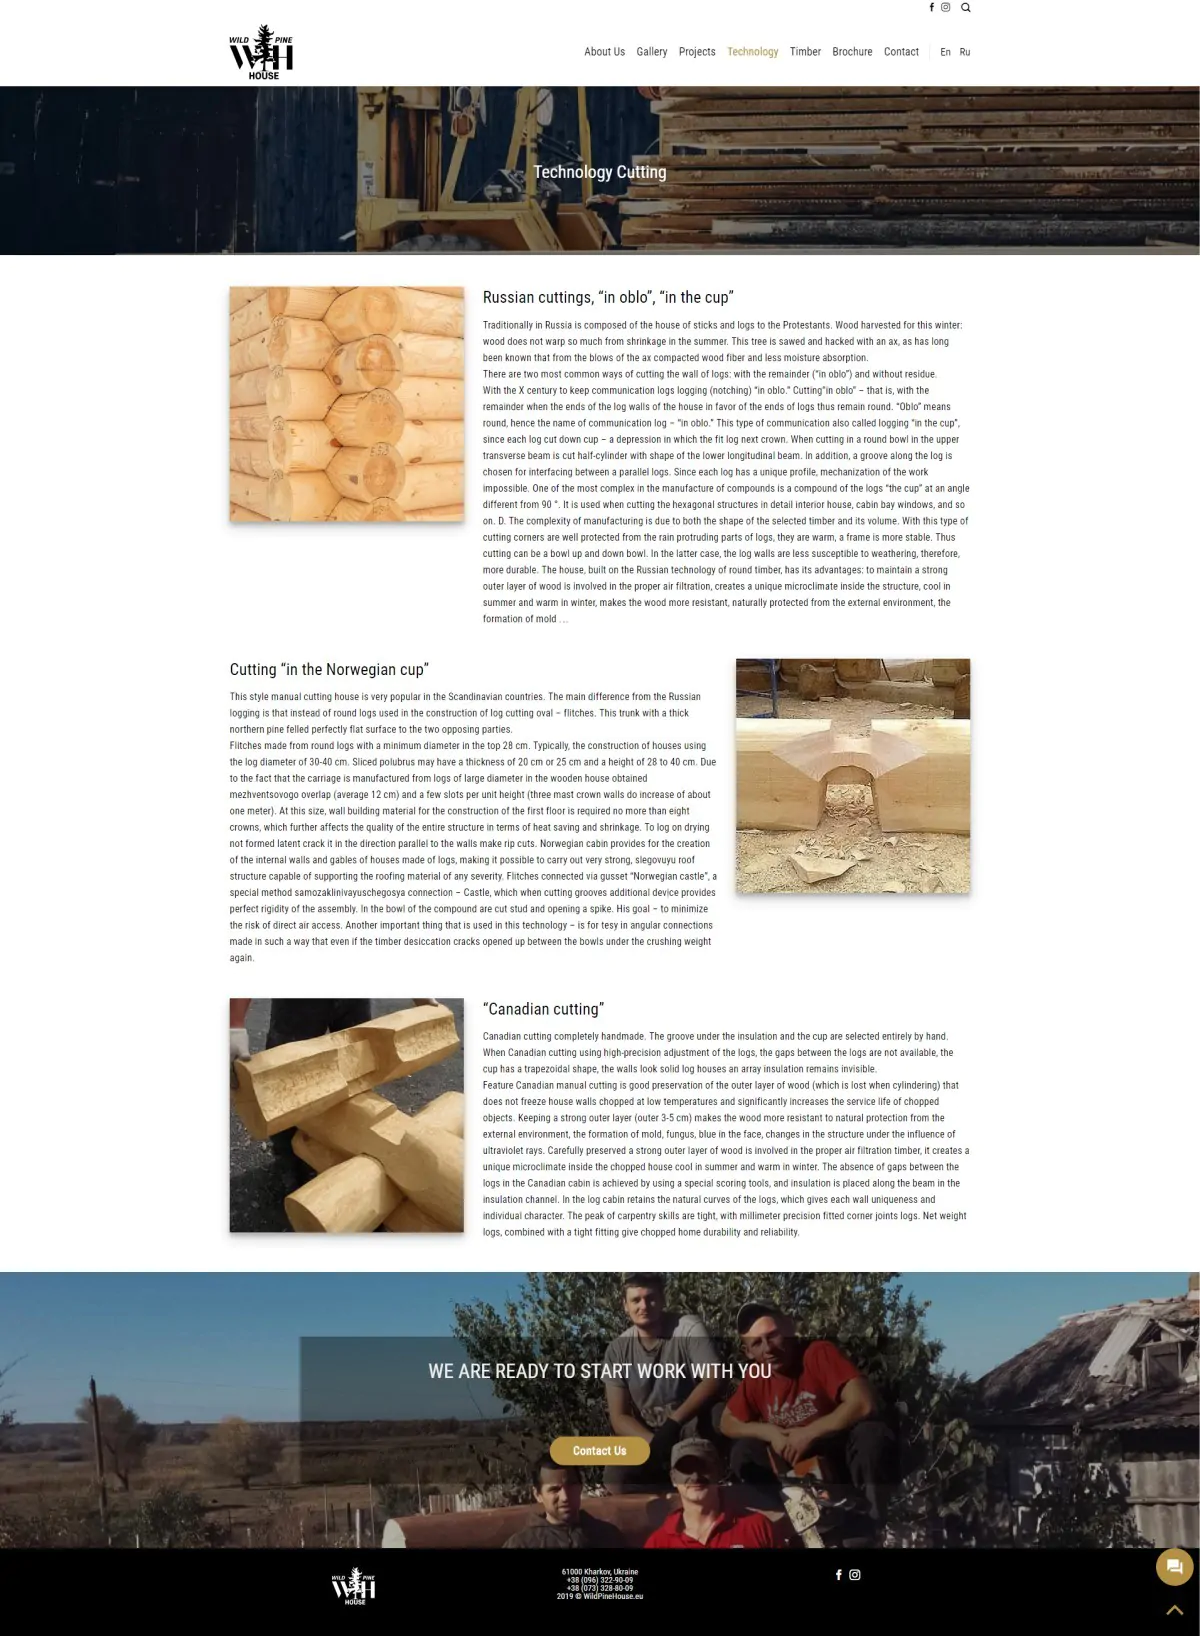 Tworzenie Strony Firmowej. Budowa Domów Drewnianych Tworzenie Strony Firmowej,Budowa Domów Drewnianych Tworzenie Strony Firmowej Budowa Domow Drewnianych Webpanda webpanda